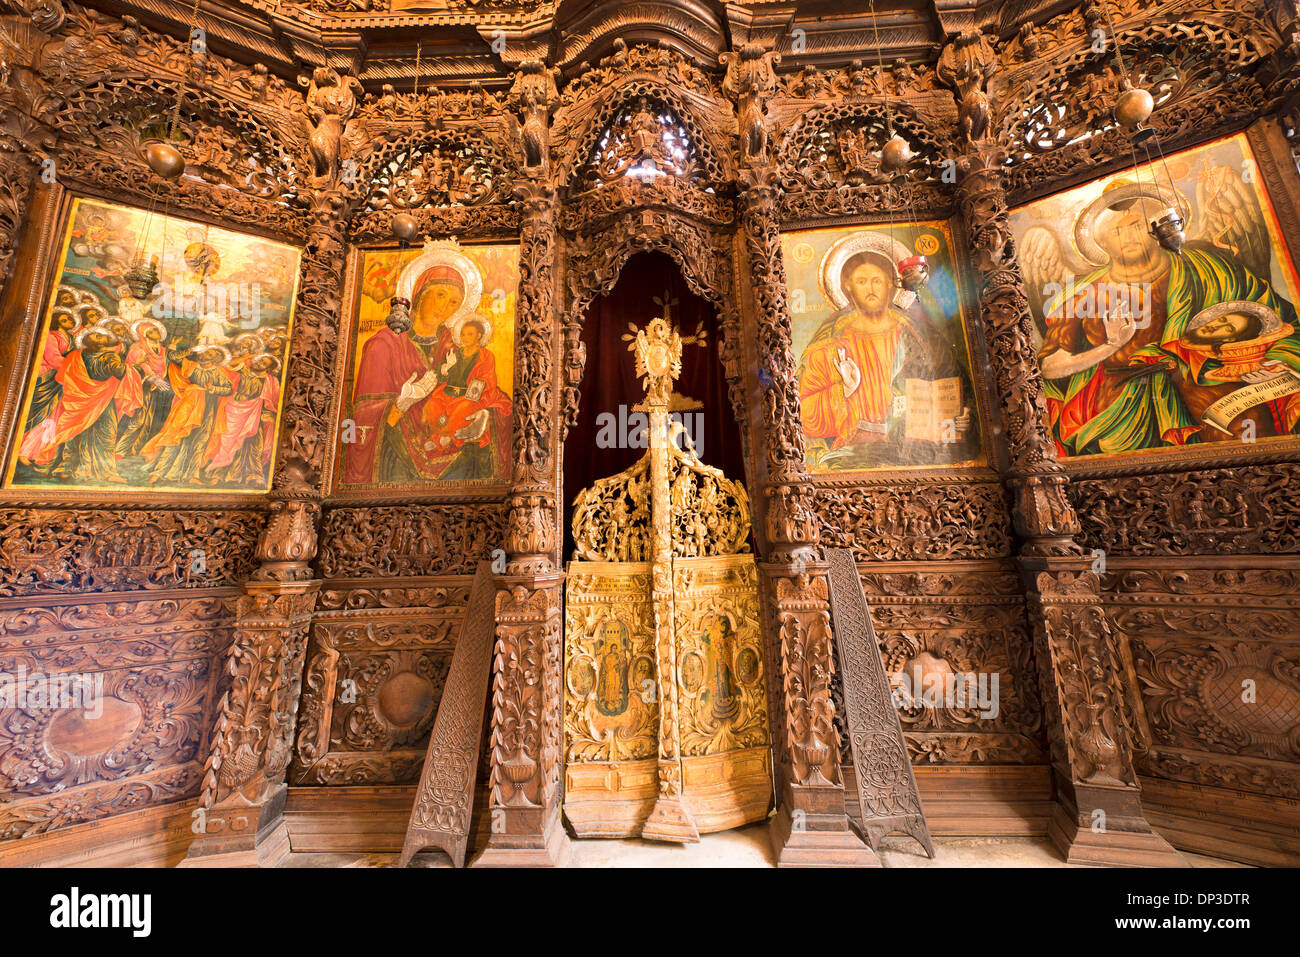 Eglise de Saint Spas Skopje Macédoine Western Balkans Europe fresques et iconostases sculptées les sculptures sur bois 17e siècle Banque D'Images